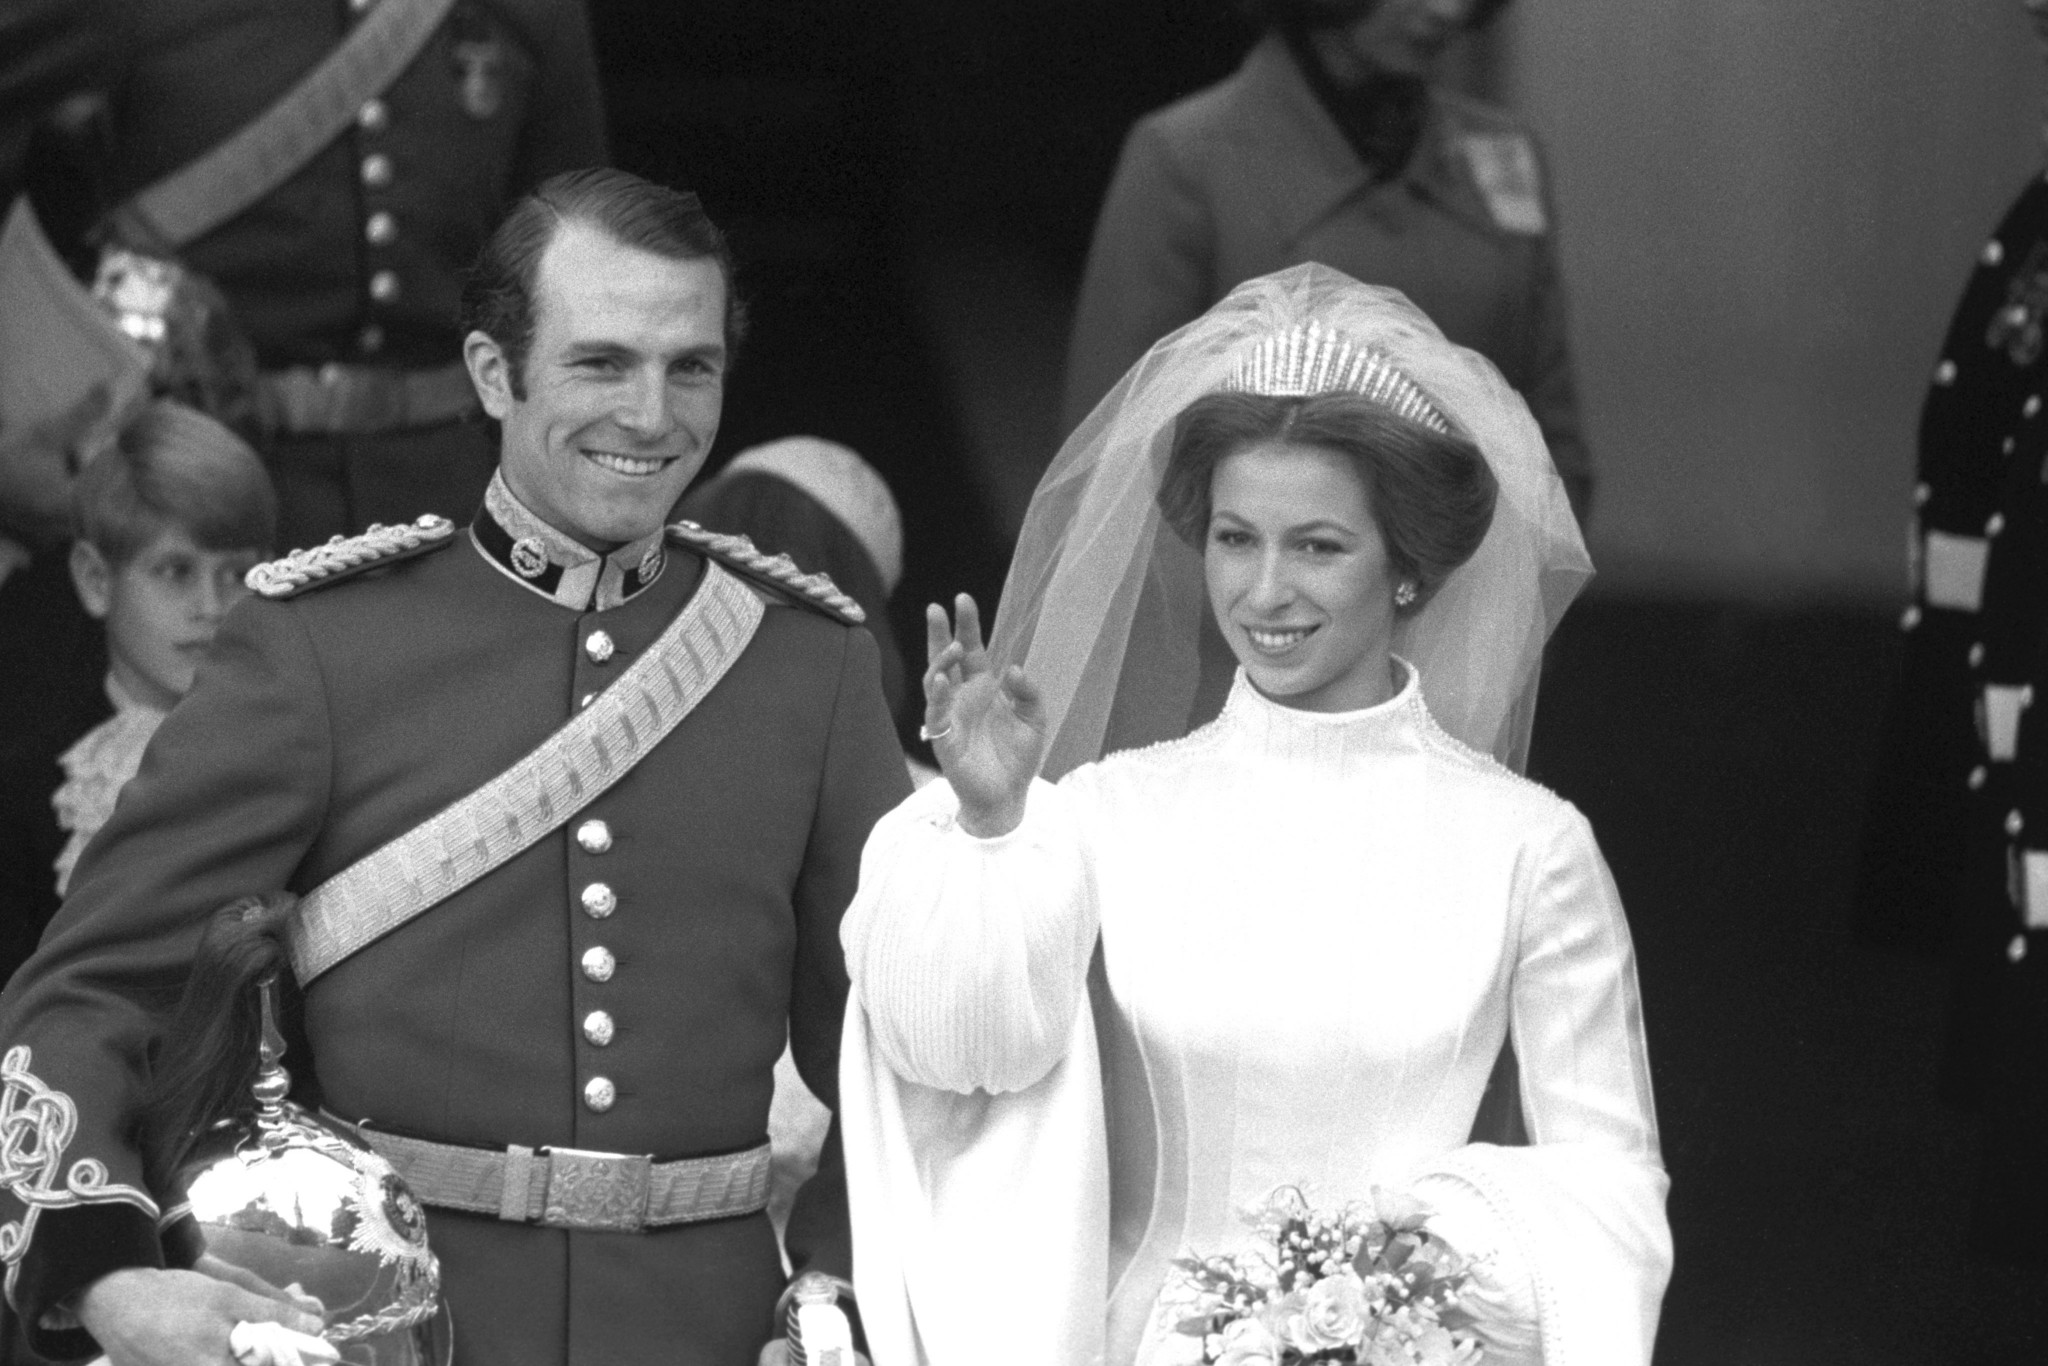 Οι εκθαμβωτικές τιάρες αμύθητης αξίας που φορούν οι γυναίκες της Βρετανικής βασιλικής οικογένειας